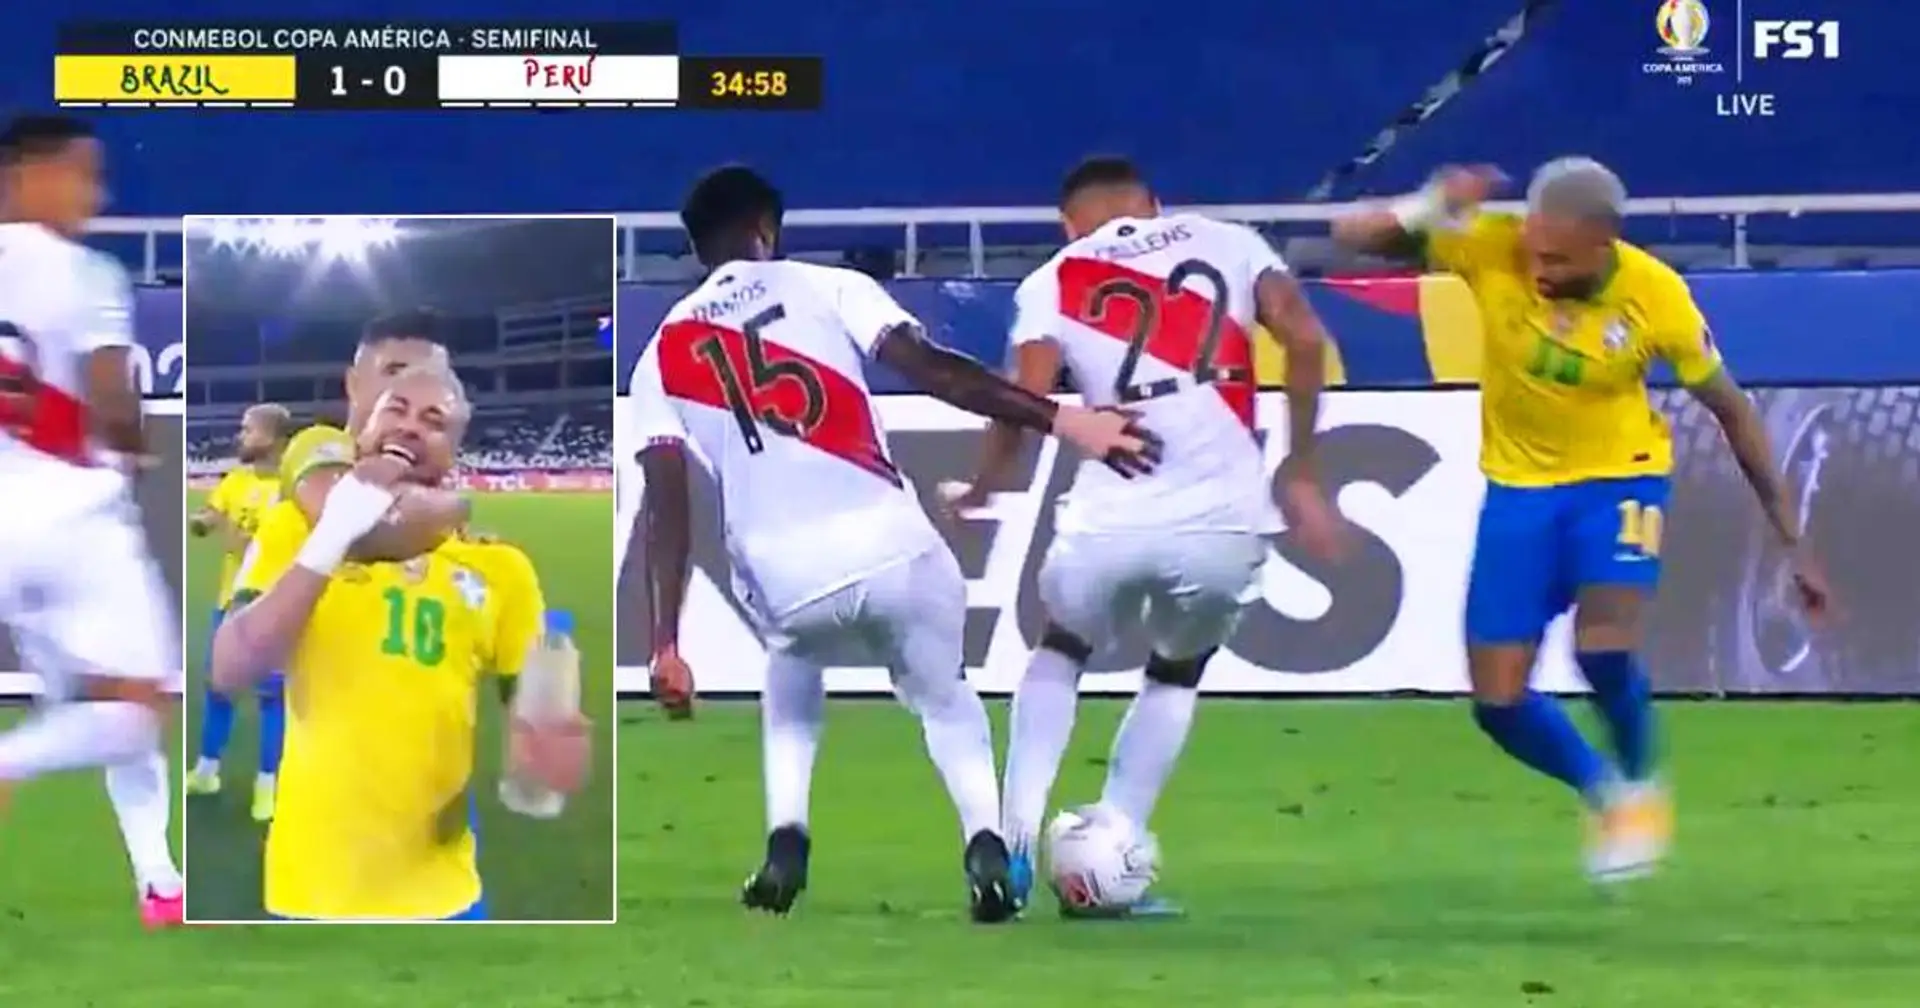 3 difensori davanti a Neymar? No problem- lui li salta tutti e realizza un assist pazzesco